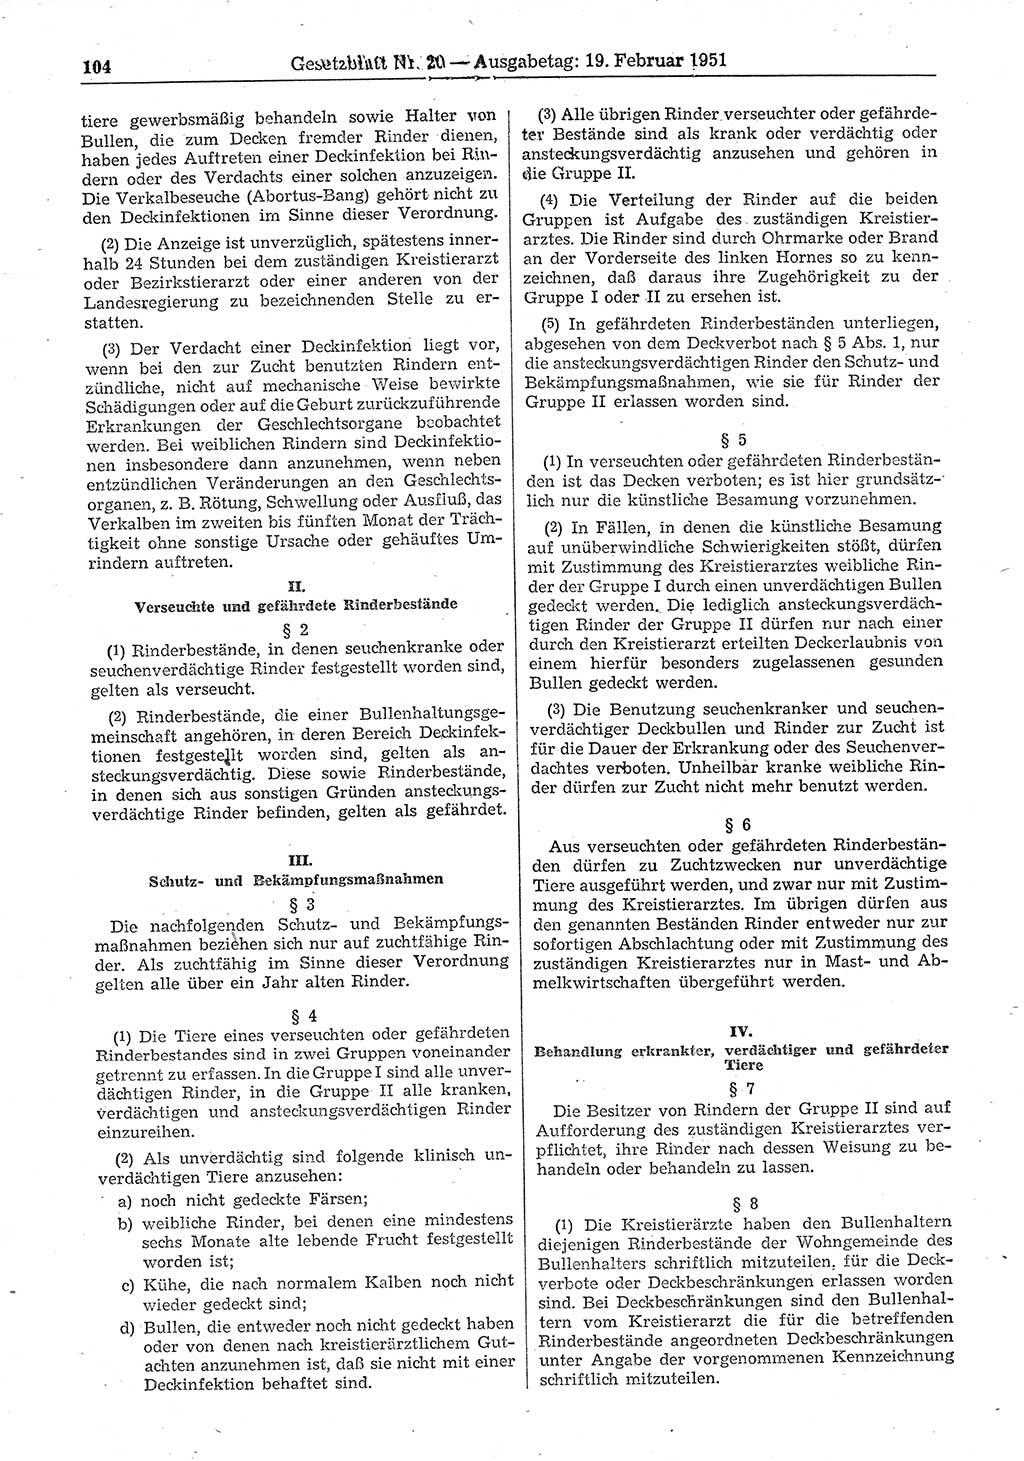 Gesetzblatt (GBl.) der Deutschen Demokratischen Republik (DDR) 1951, Seite 104 (GBl. DDR 1951, S. 104)